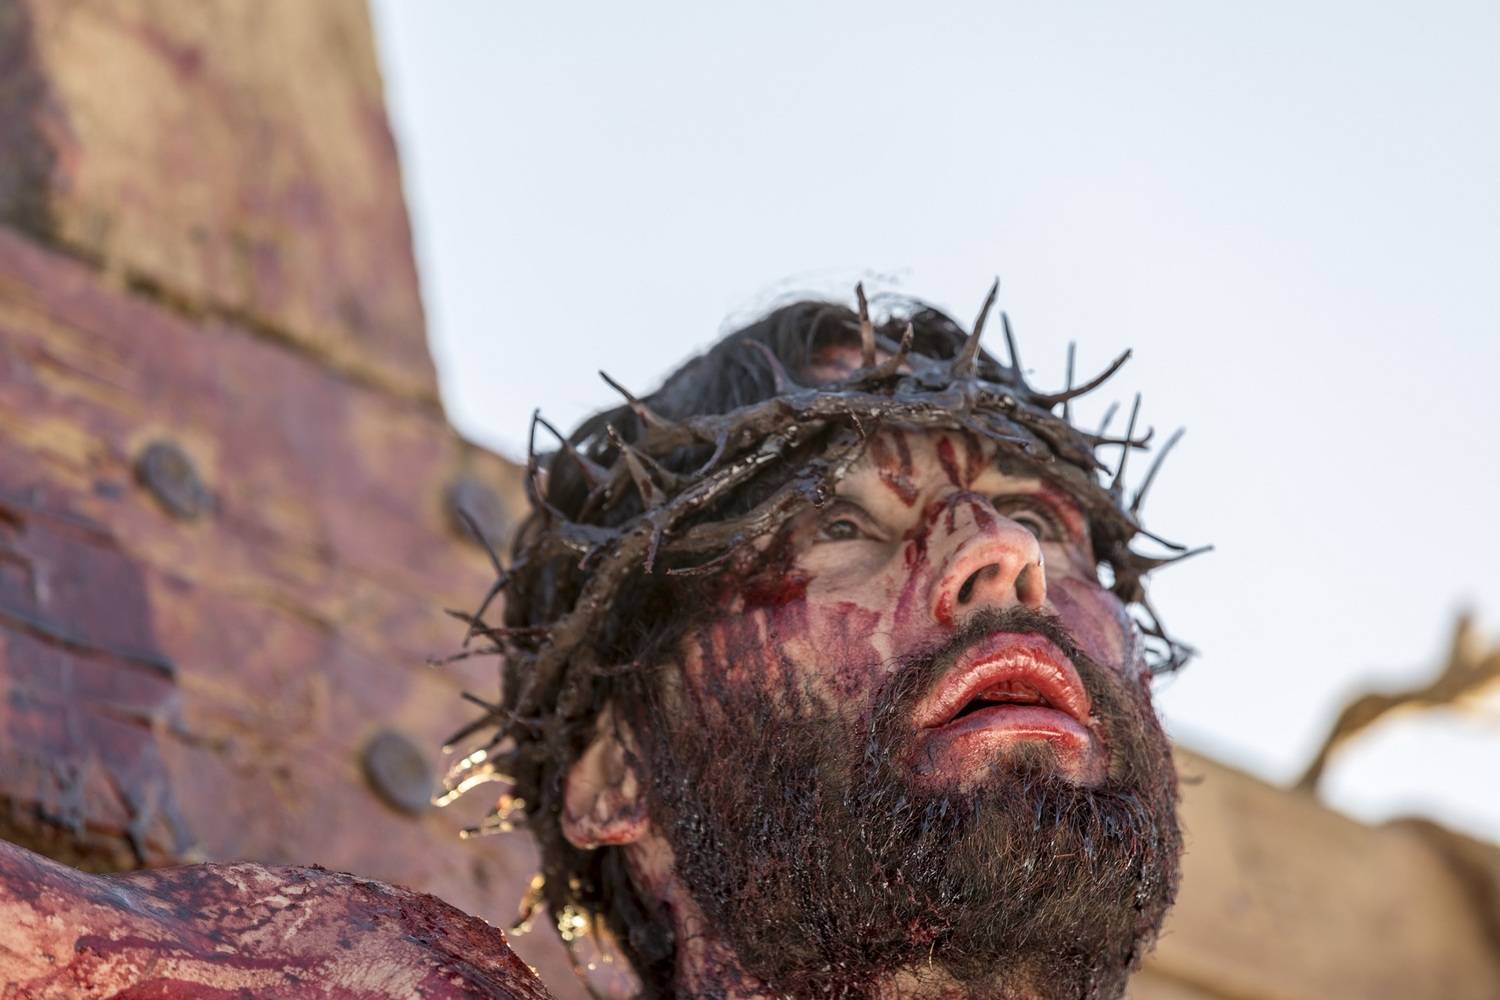 Jesus é crucificado entre os ladrões Dimas e Gestas - Fotos - R7 ...